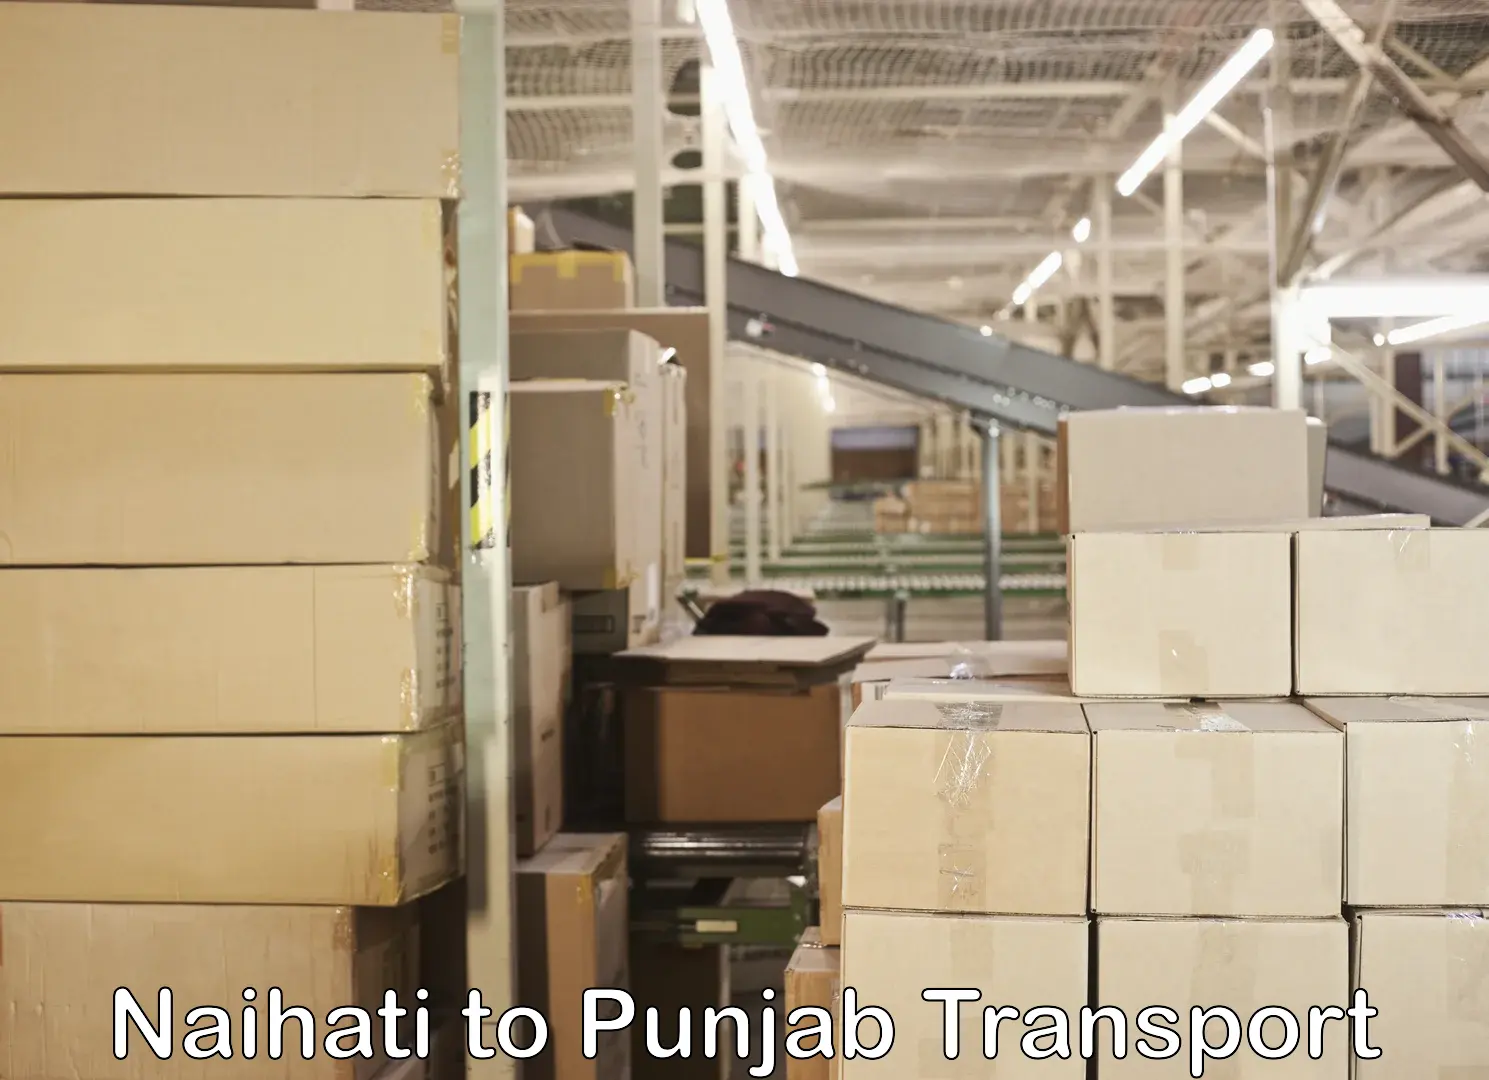 Nearest transport service Naihati to Punjab